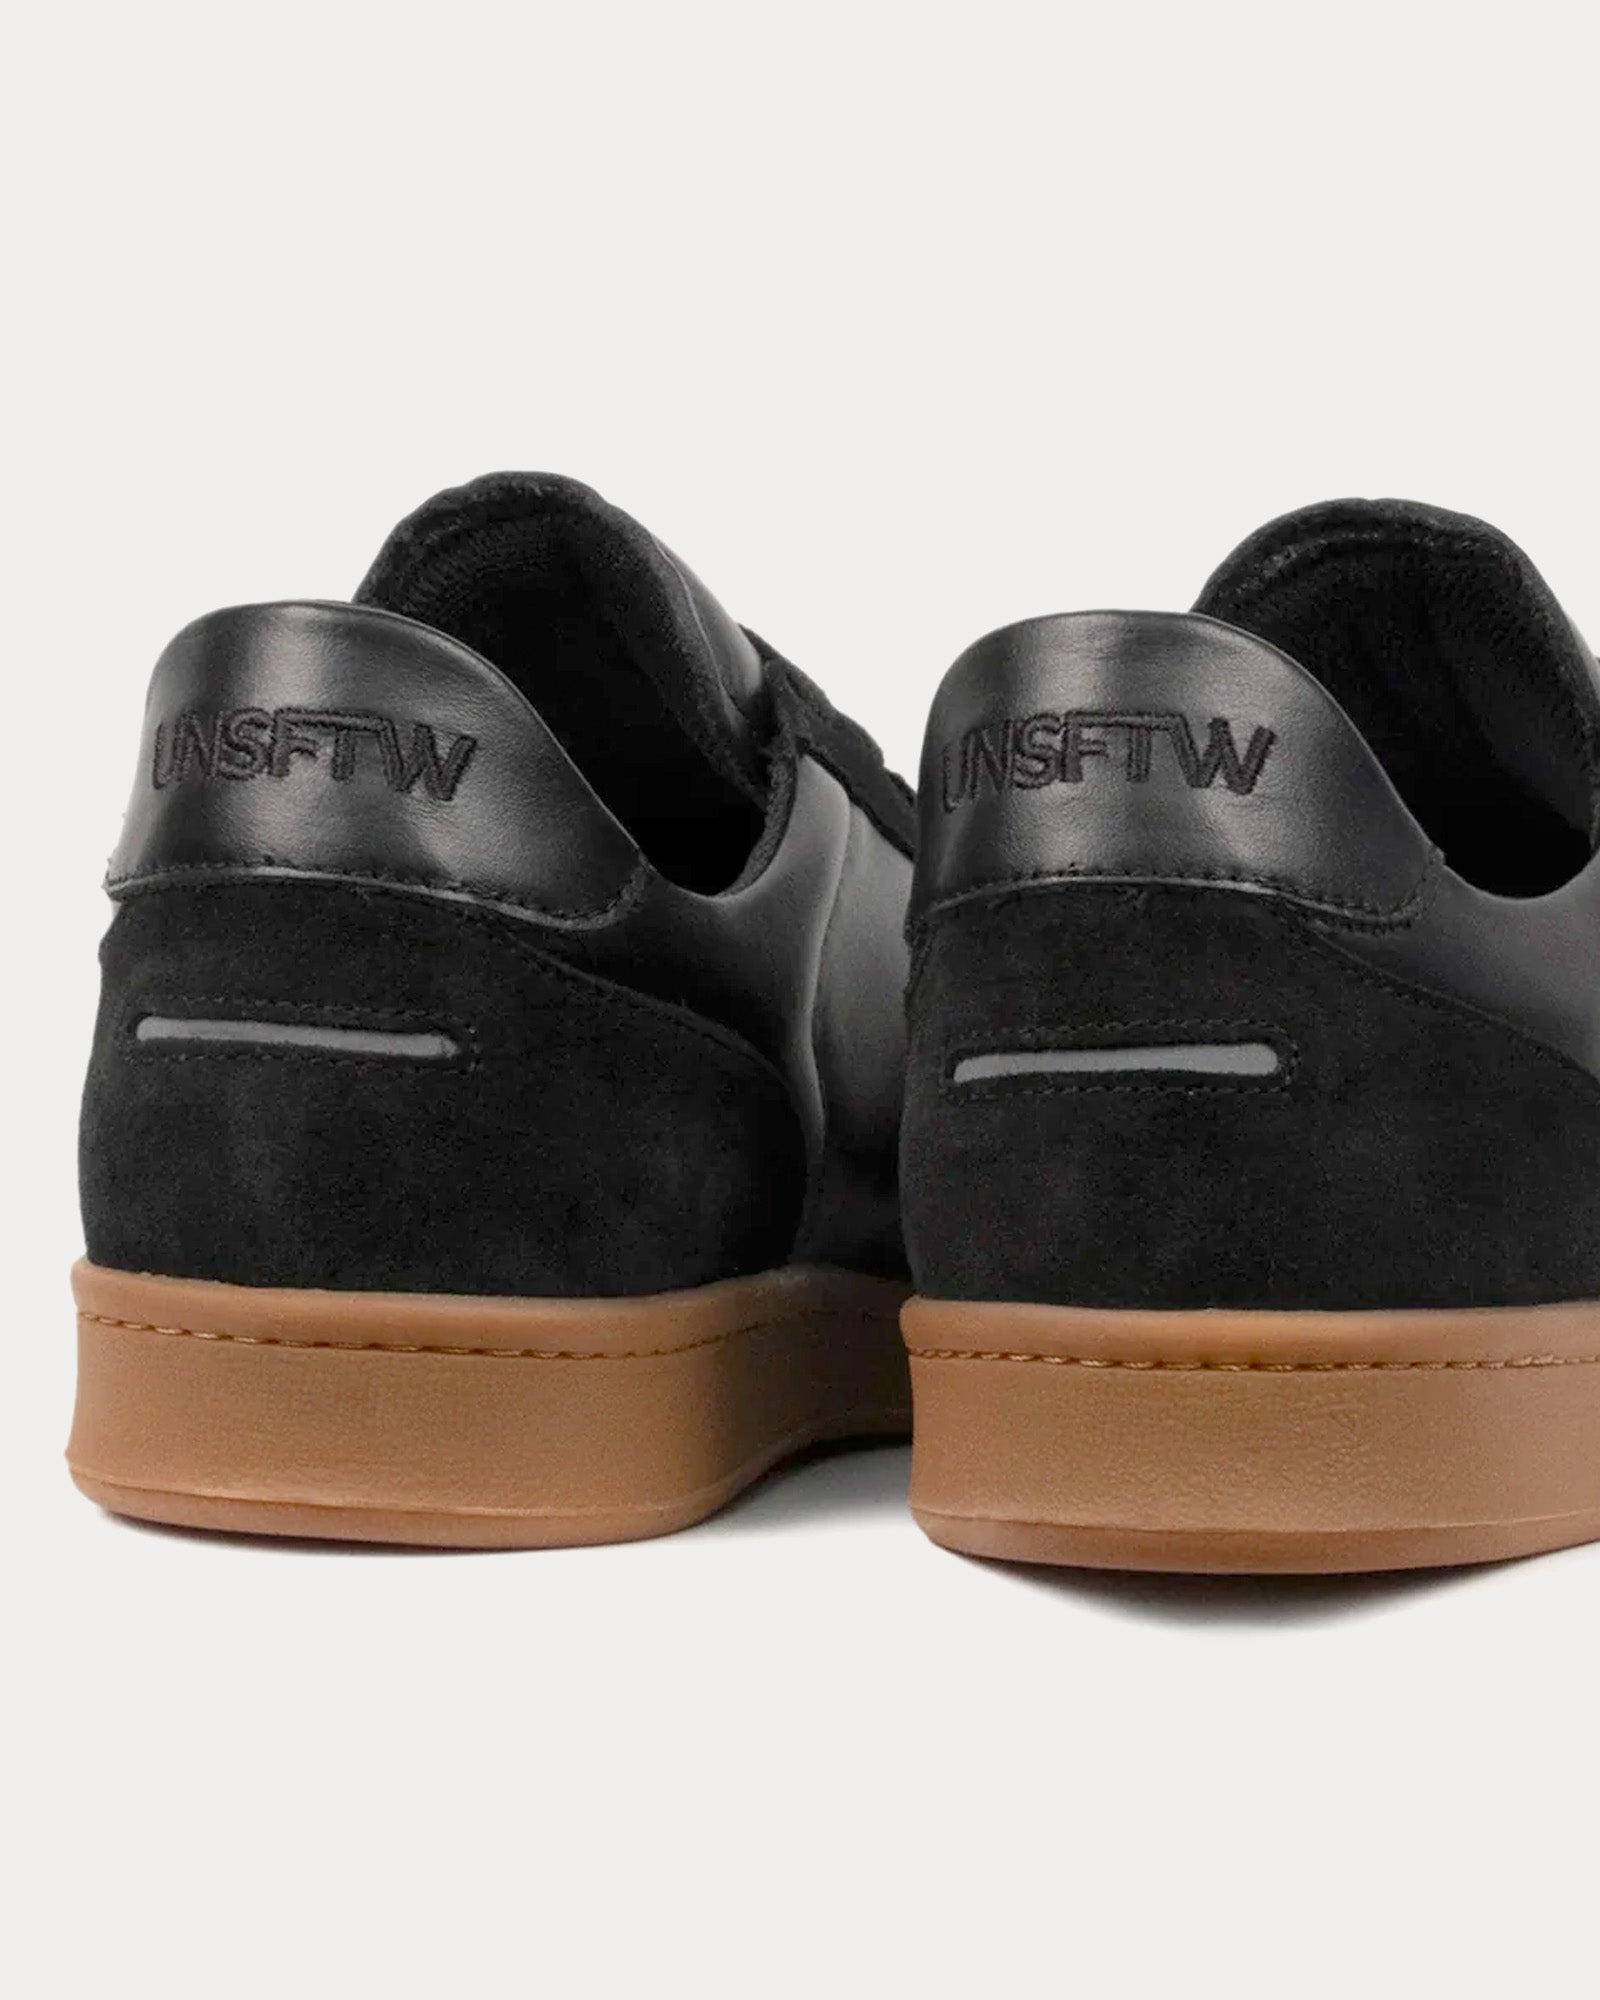 Unseen Footwear - Portelet Leather Black / Gum Low Top Sneakers